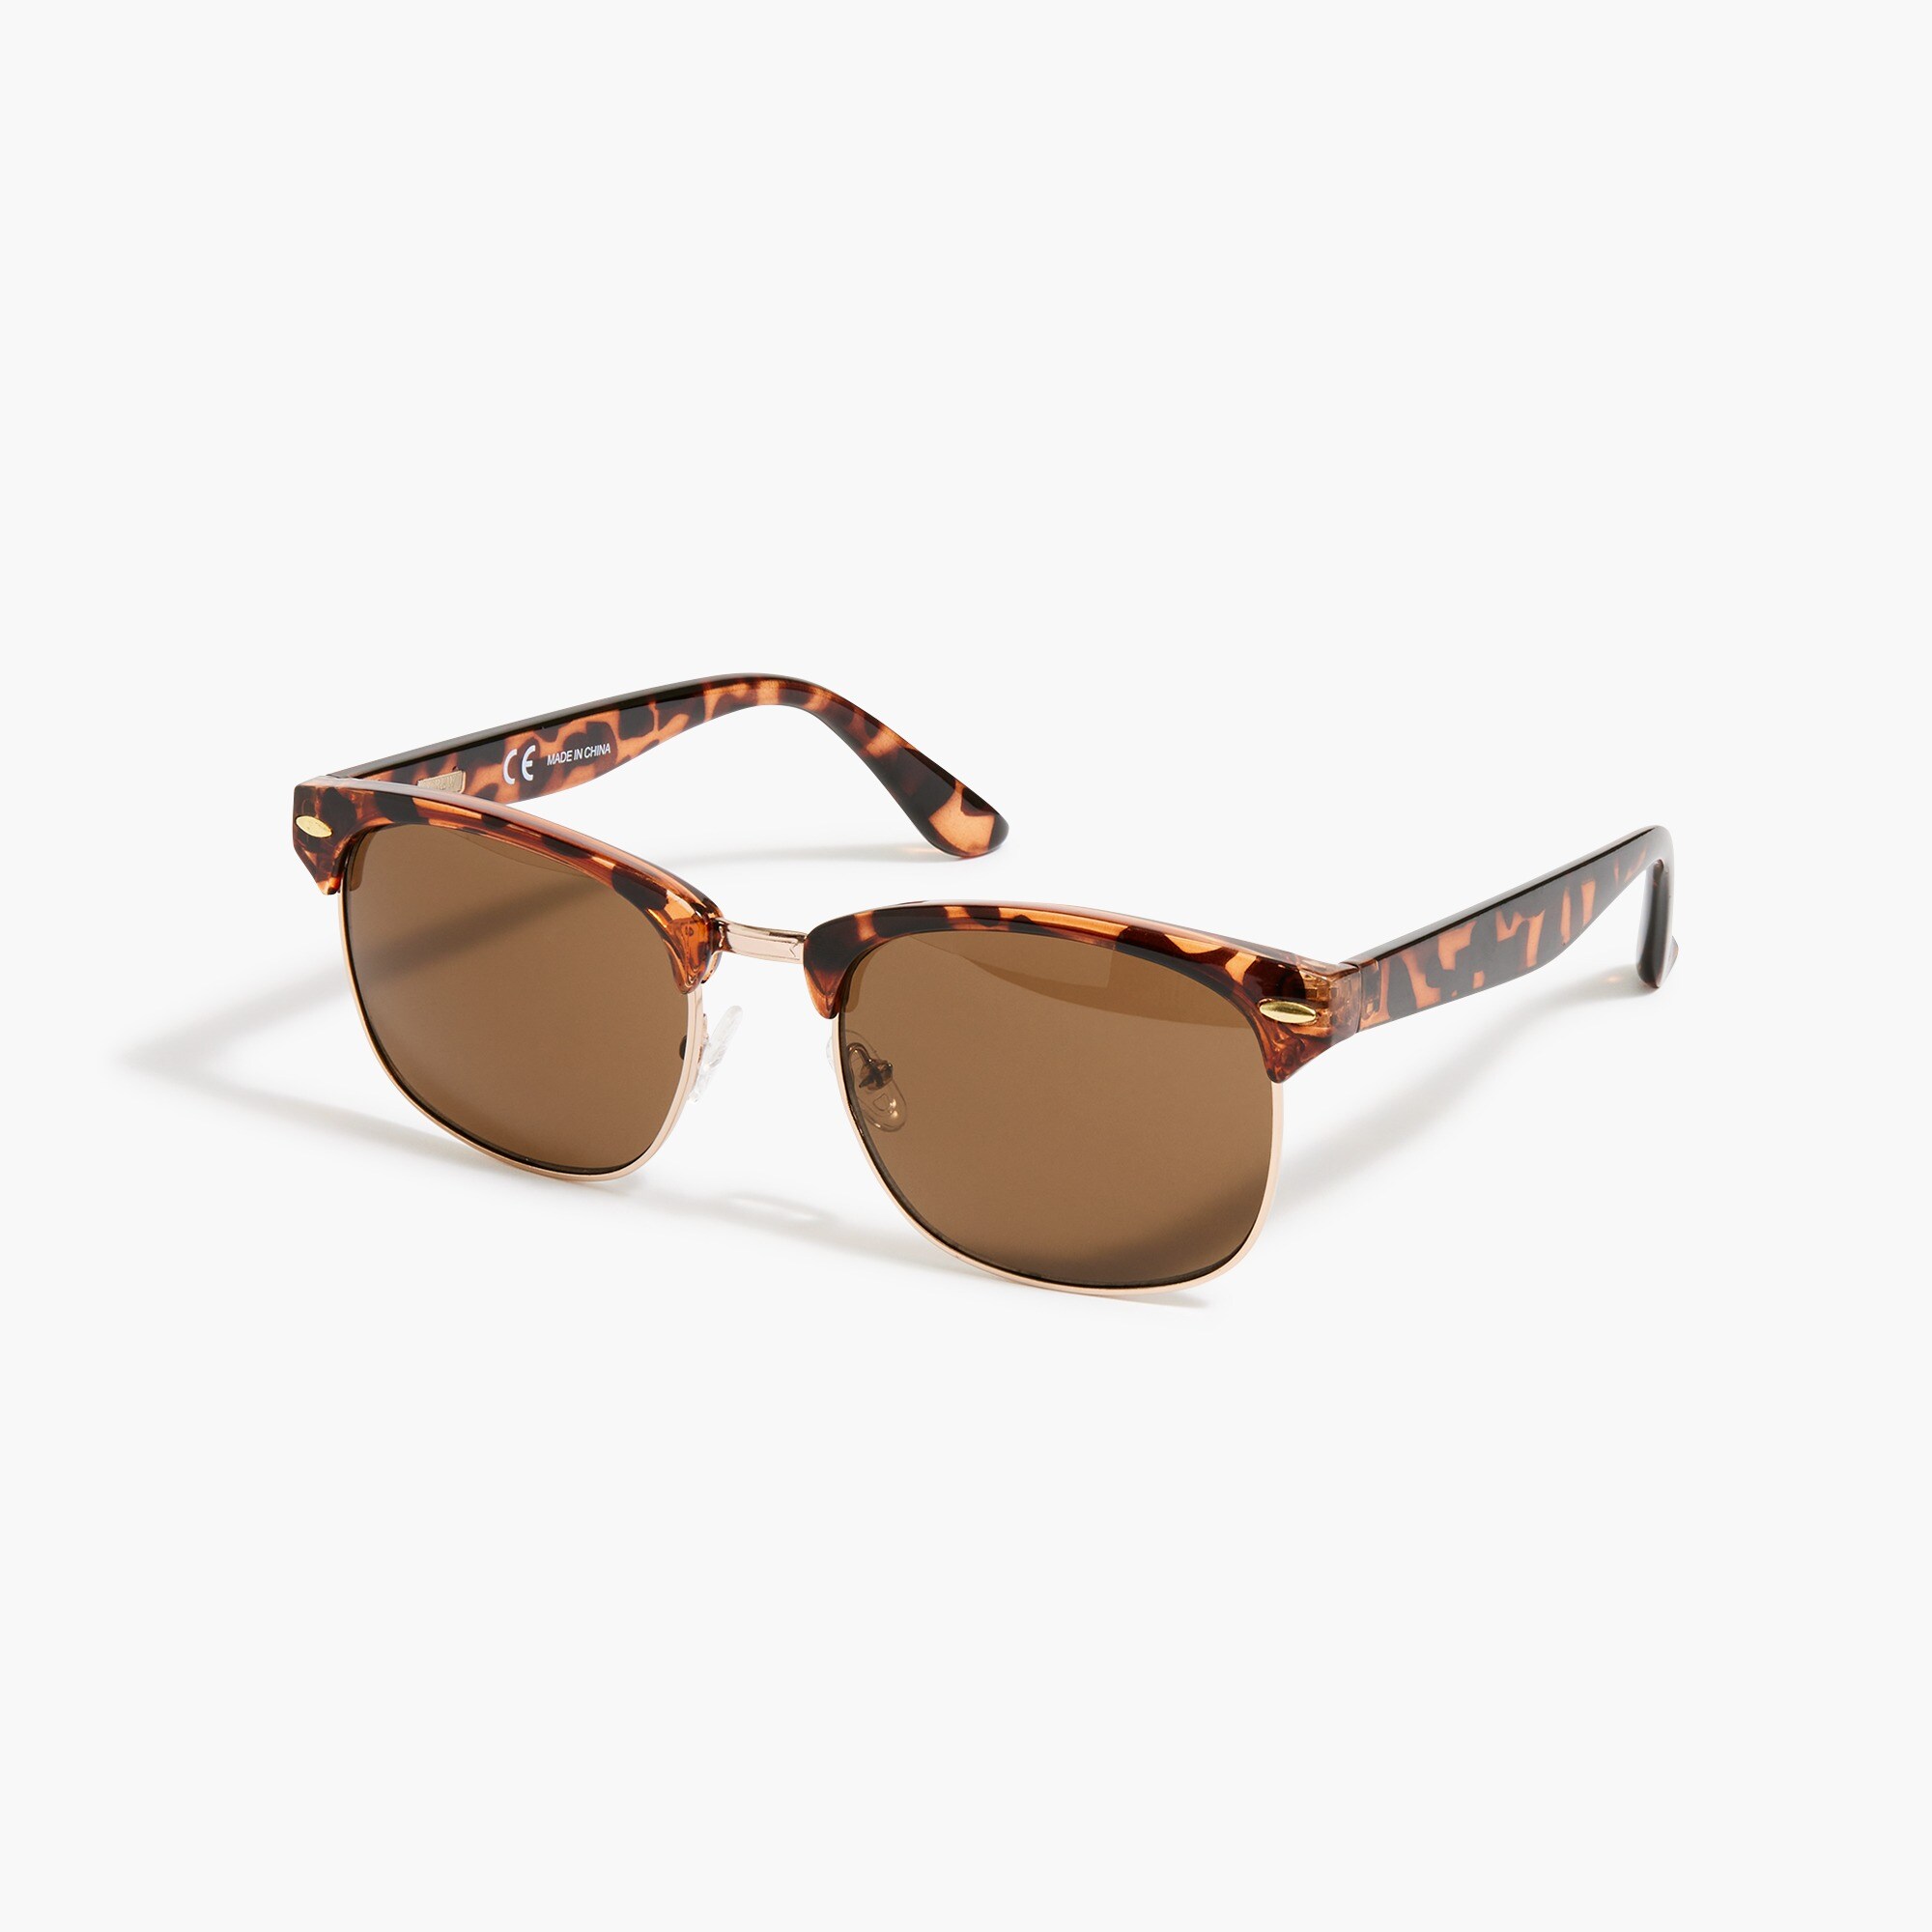  Retro tortoise sunglasses